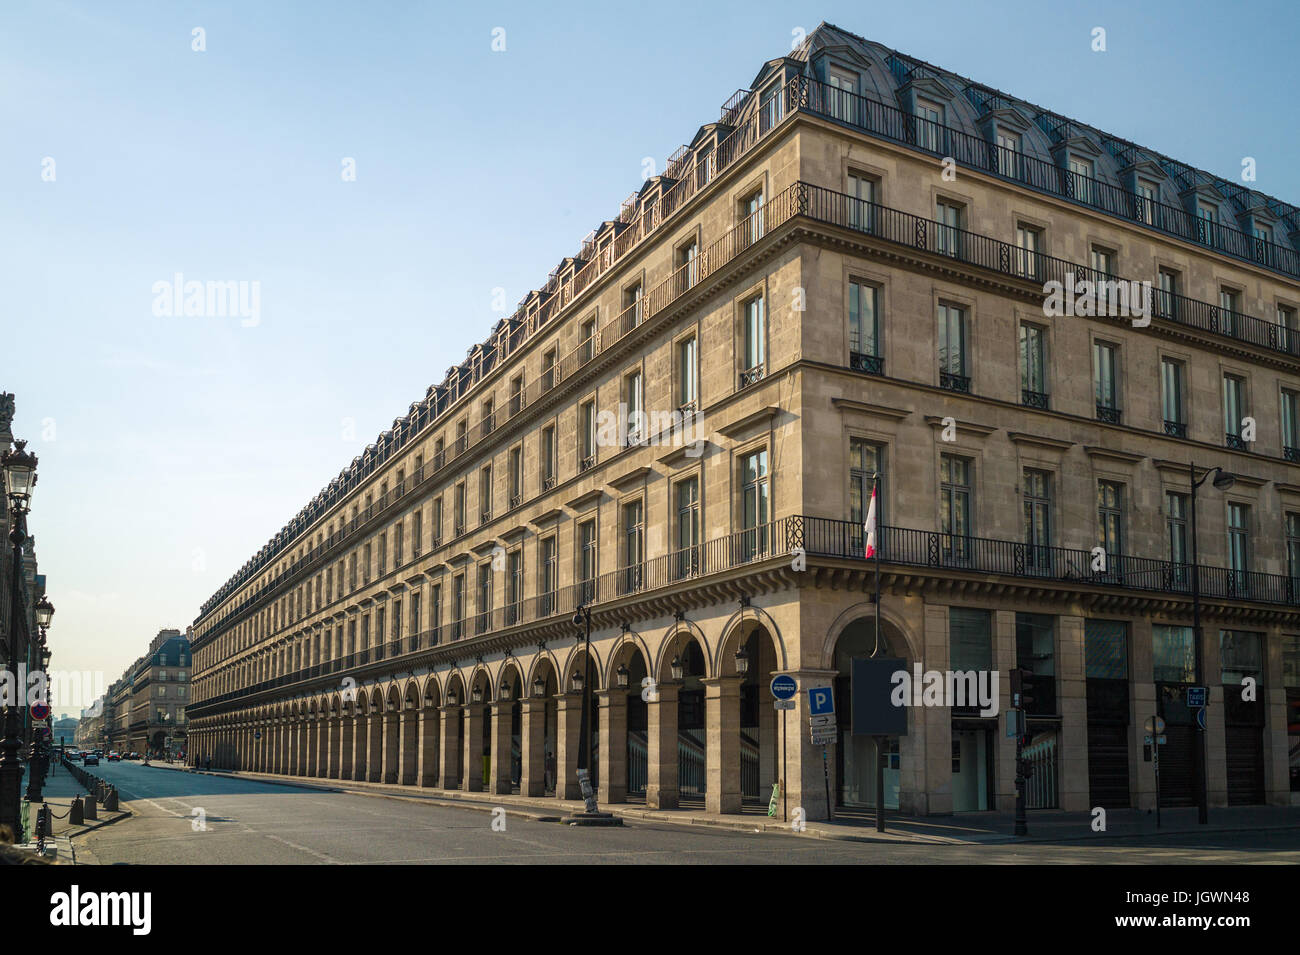 Un bâtiment de style typiquement Haussmann à Paris avec balcons, arcades et boutiques sous une lumière chaude de fin d'après-midi. Banque D'Images